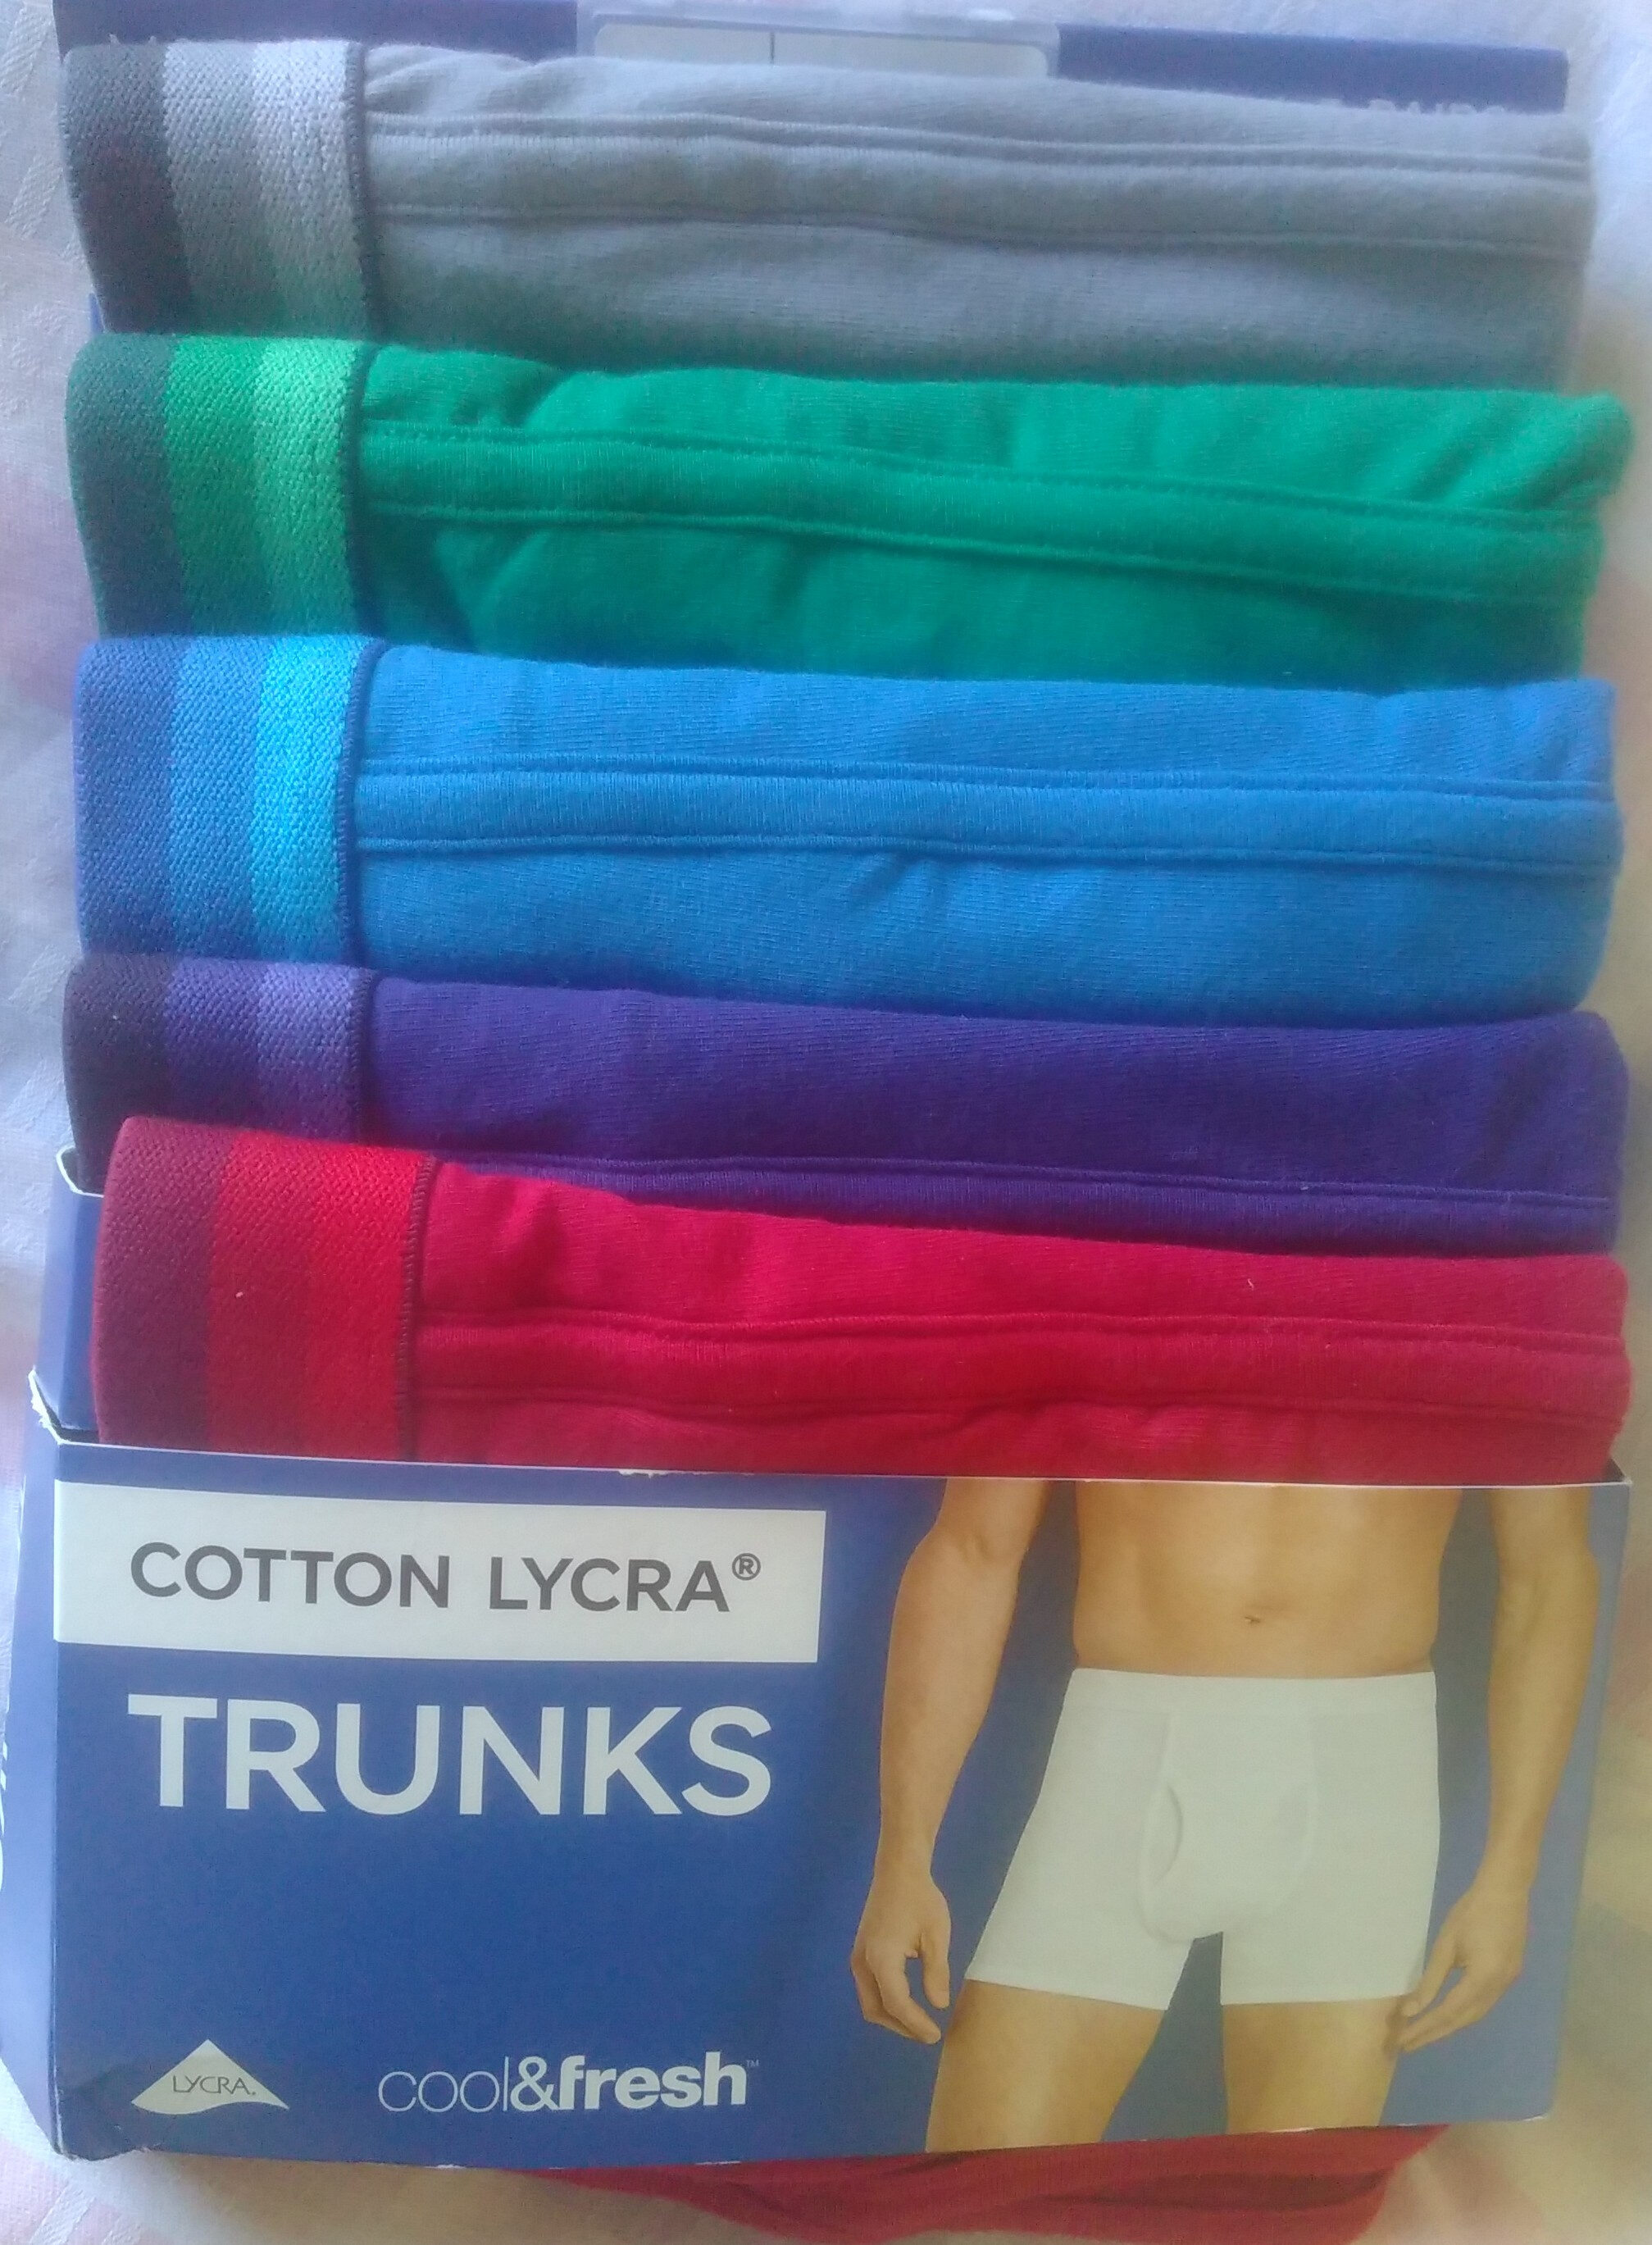 M&S Cotton Lycra Trunks - Product - en